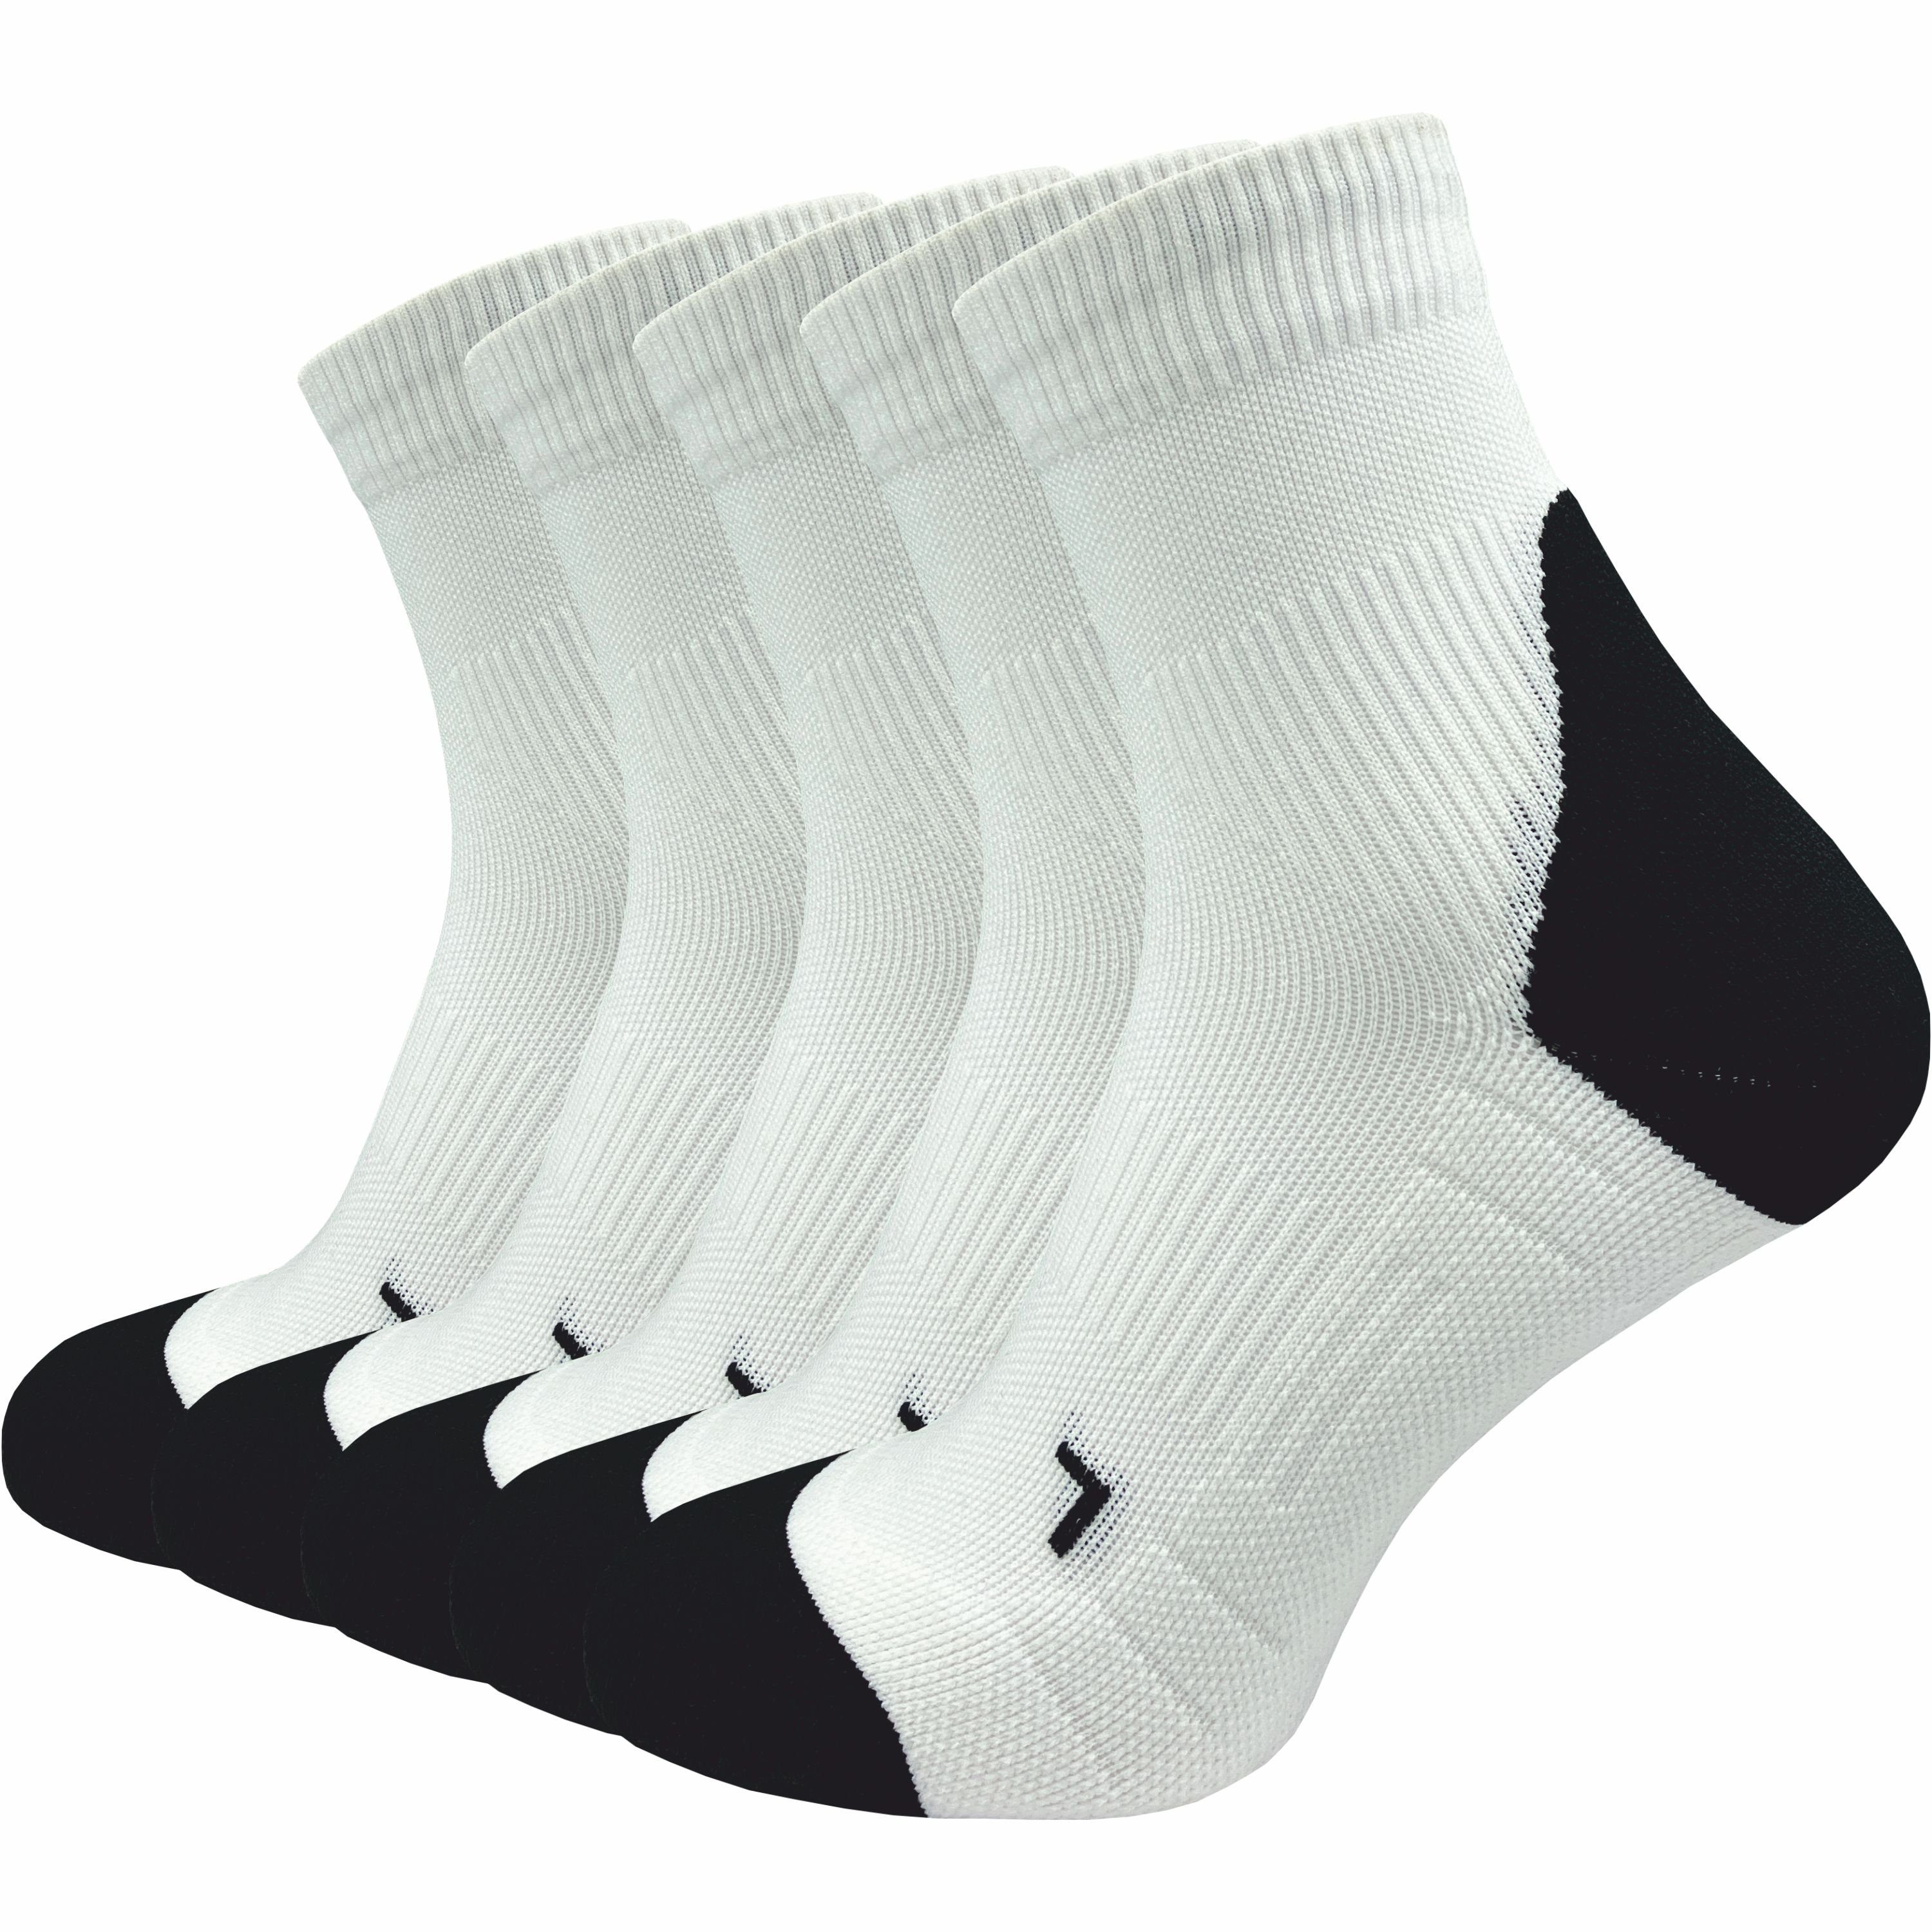 GAWILO Laufsocken für Herren mit Kompression und Polsterung in bunt,  schwarz & weiß (5 Paar) Anatomisch korrekt für den linken und rechten Fuß  gestrickt